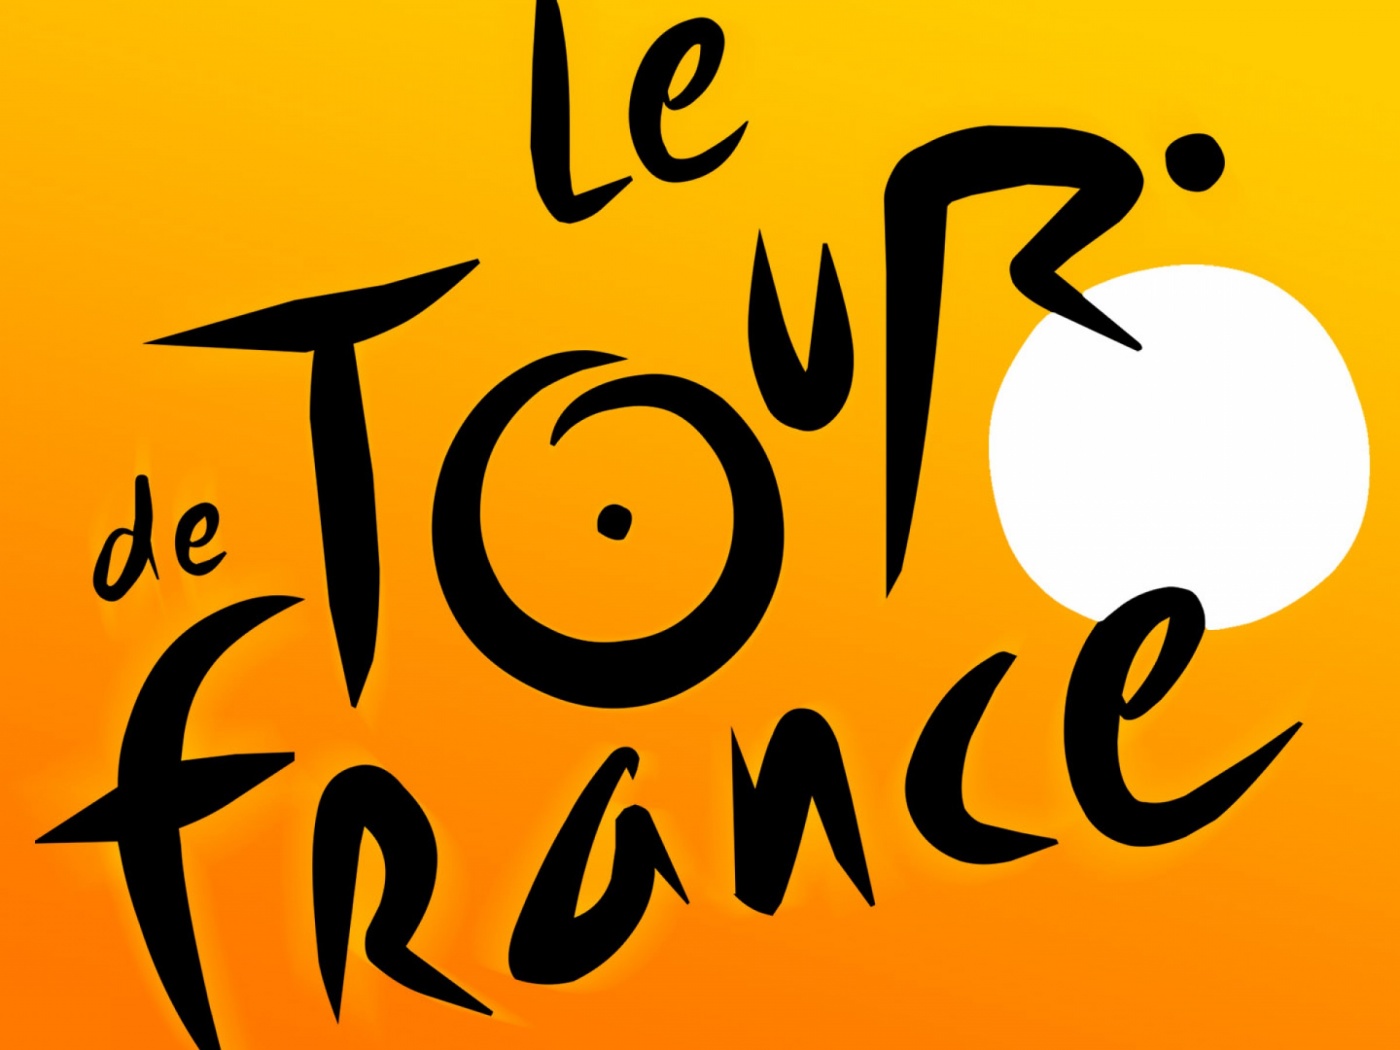 Le Tour De France - Logo